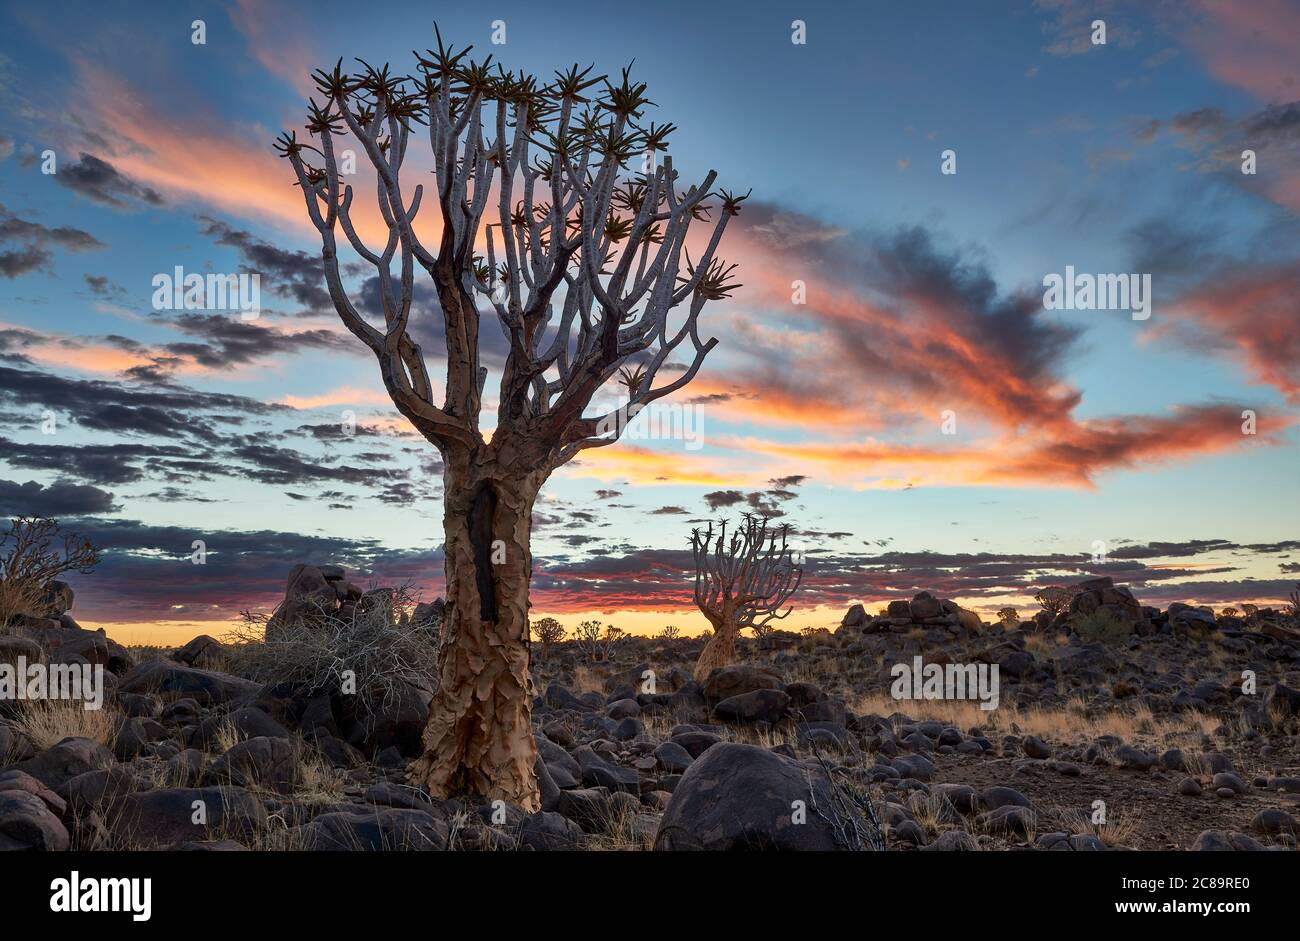 Coucher de soleil au Quiver Tree Forest, L'Aloe dichotoma, ferme Garas, Mesosaurus Fossil Site, Keetmanshoop, Namibie, Afrique Banque D'Images